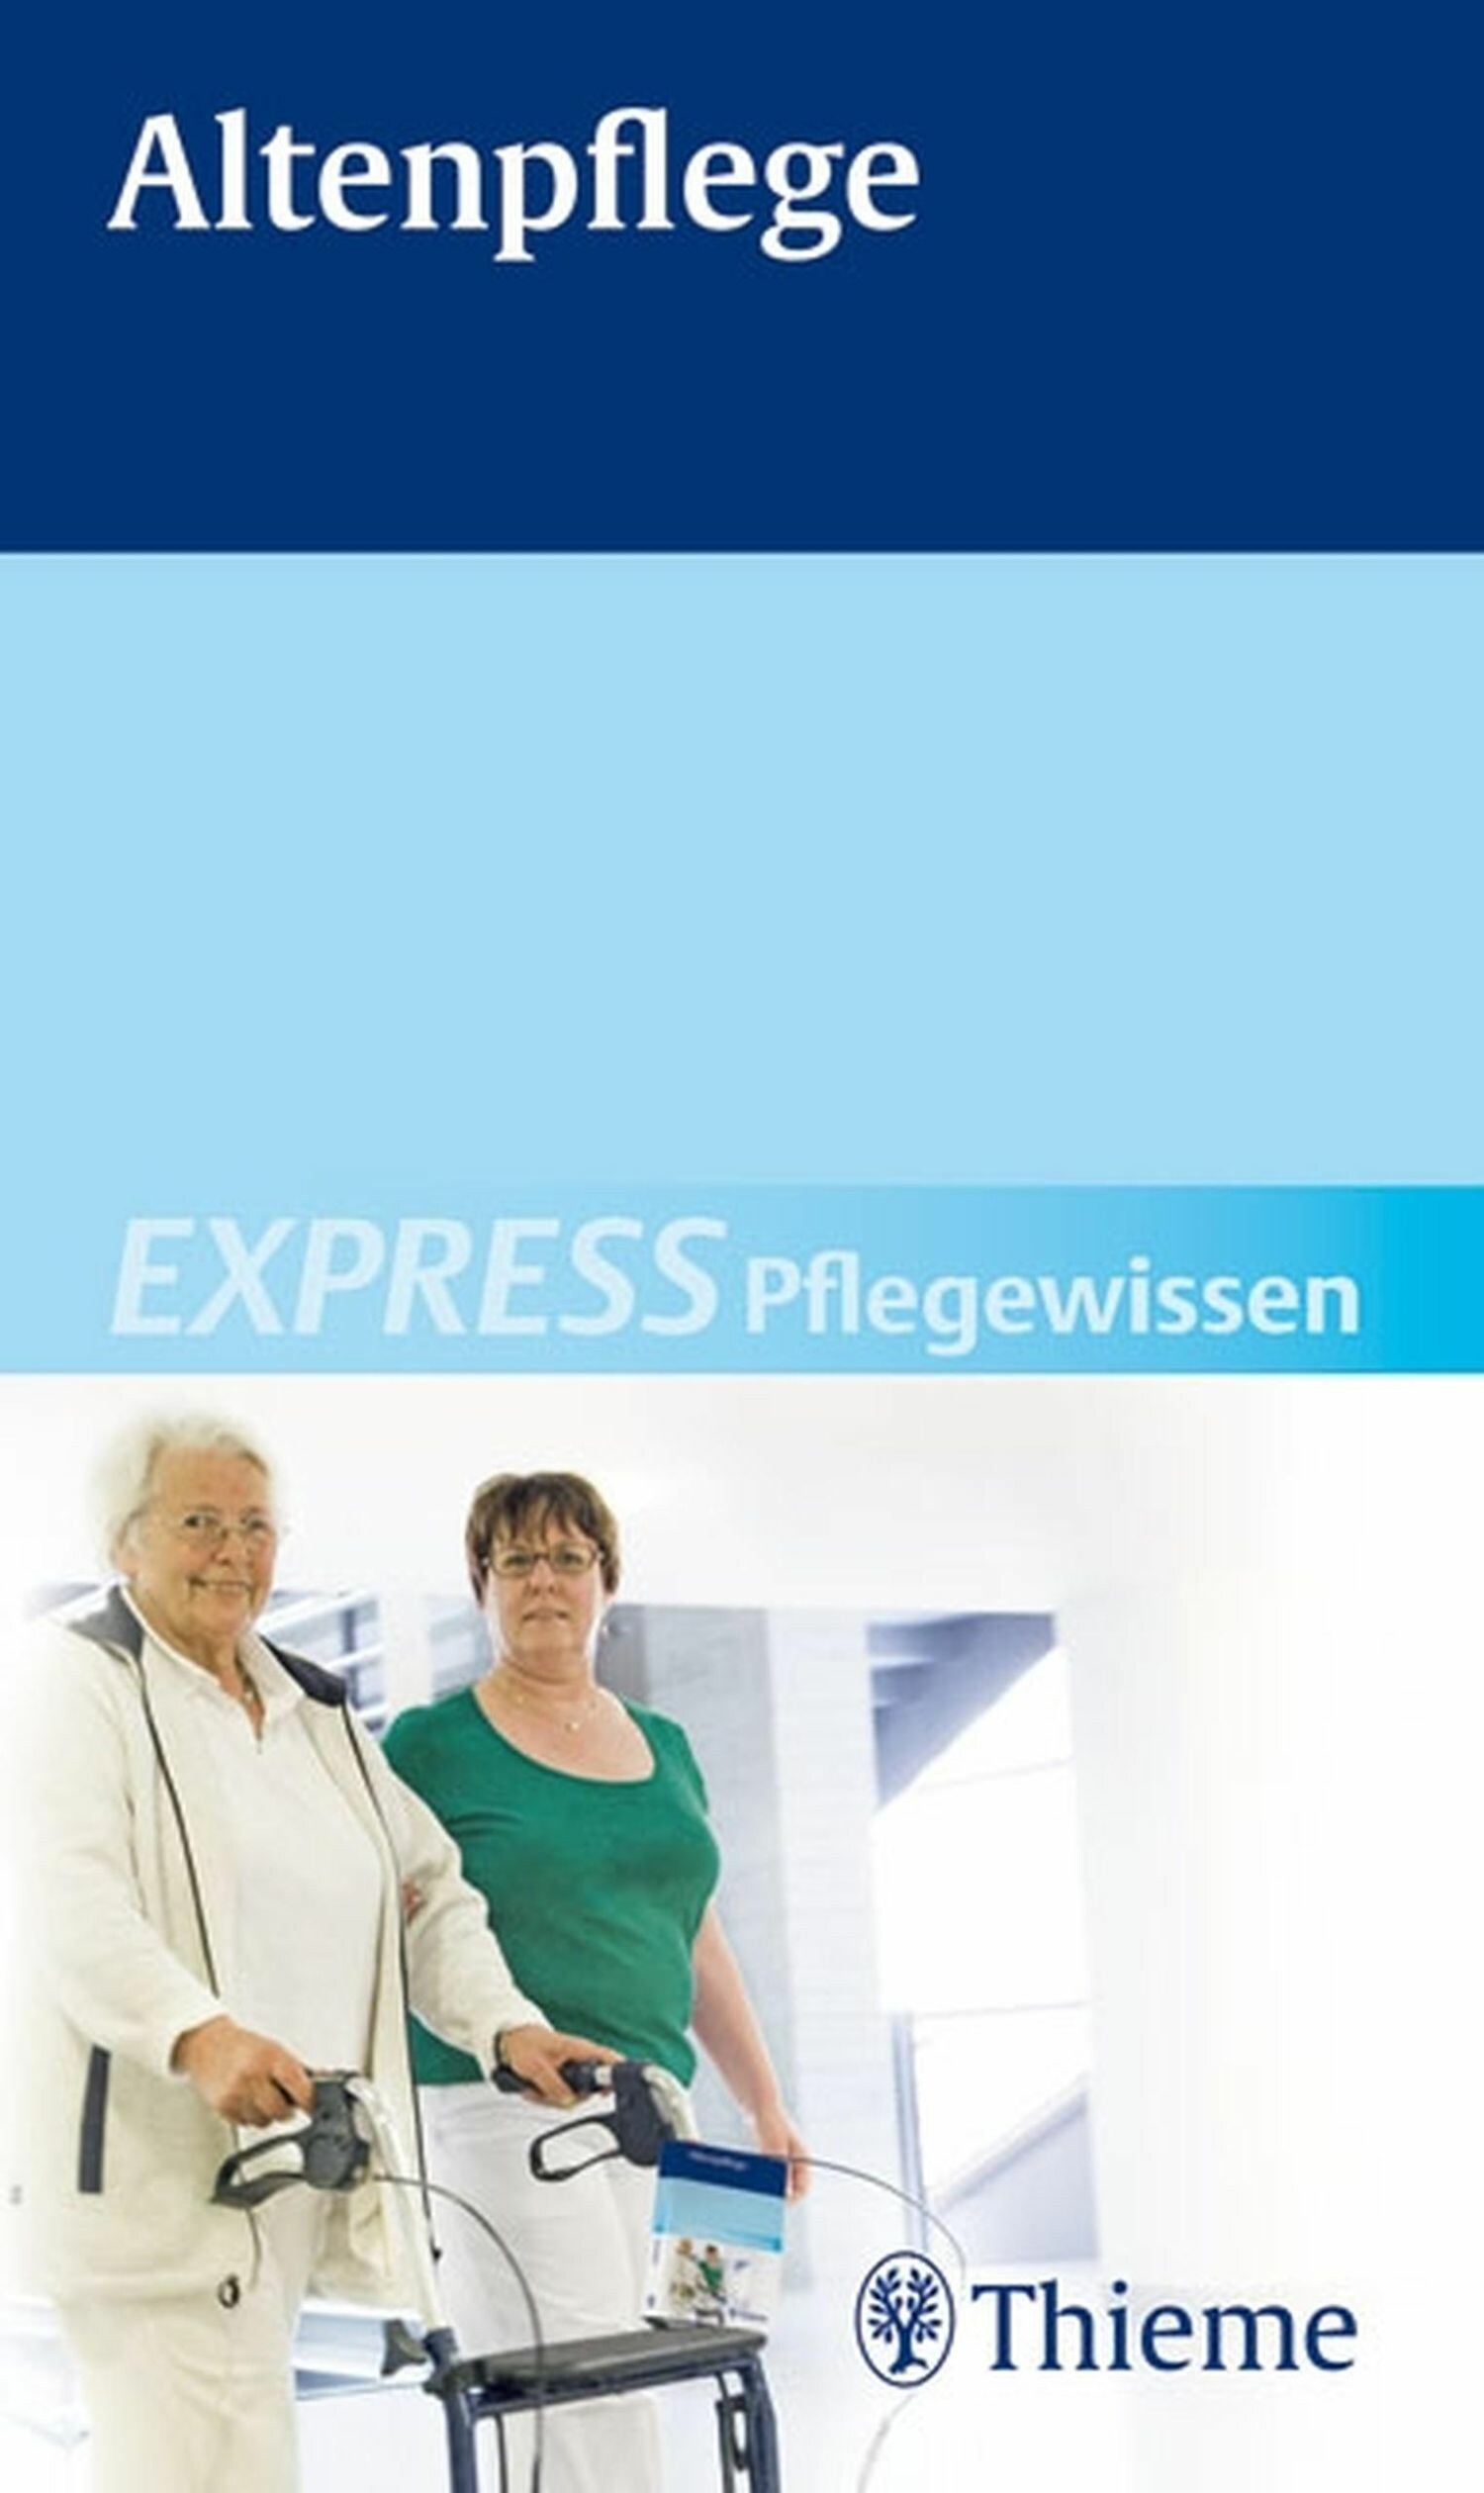 EXPRESS Pflegewissen Altenpflege